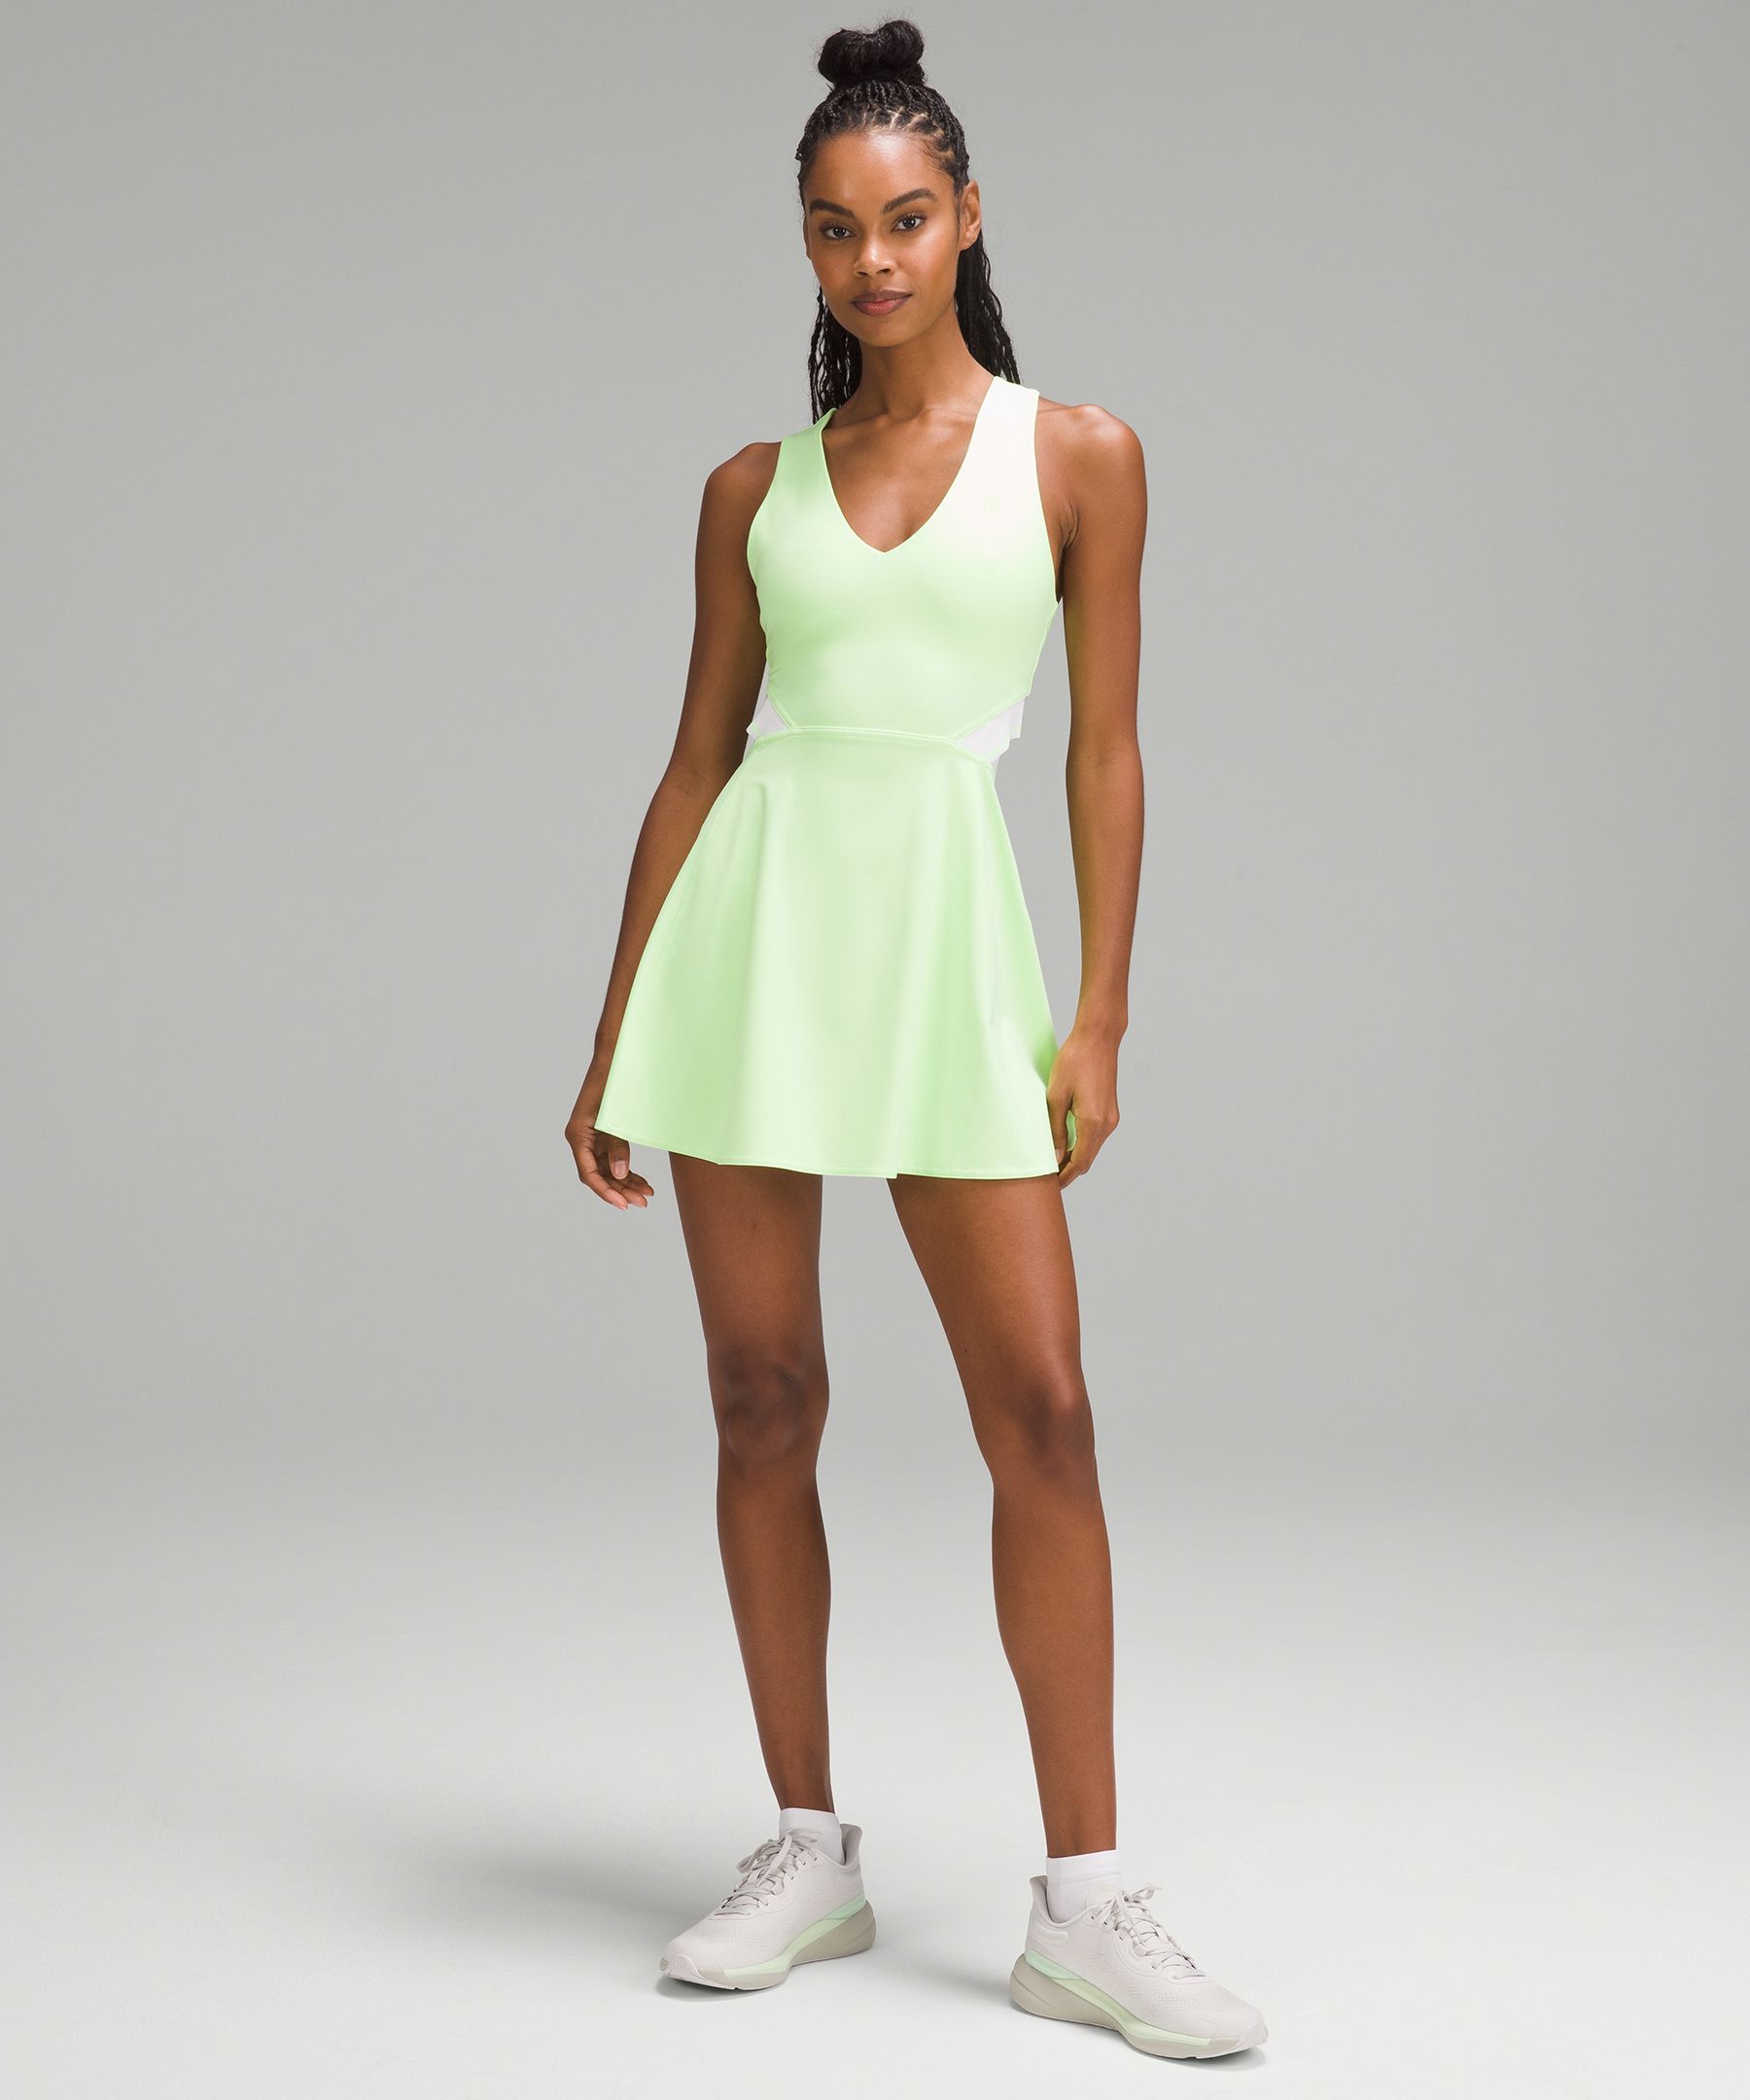 Lululemon V-neck Racerback Tennis Dress